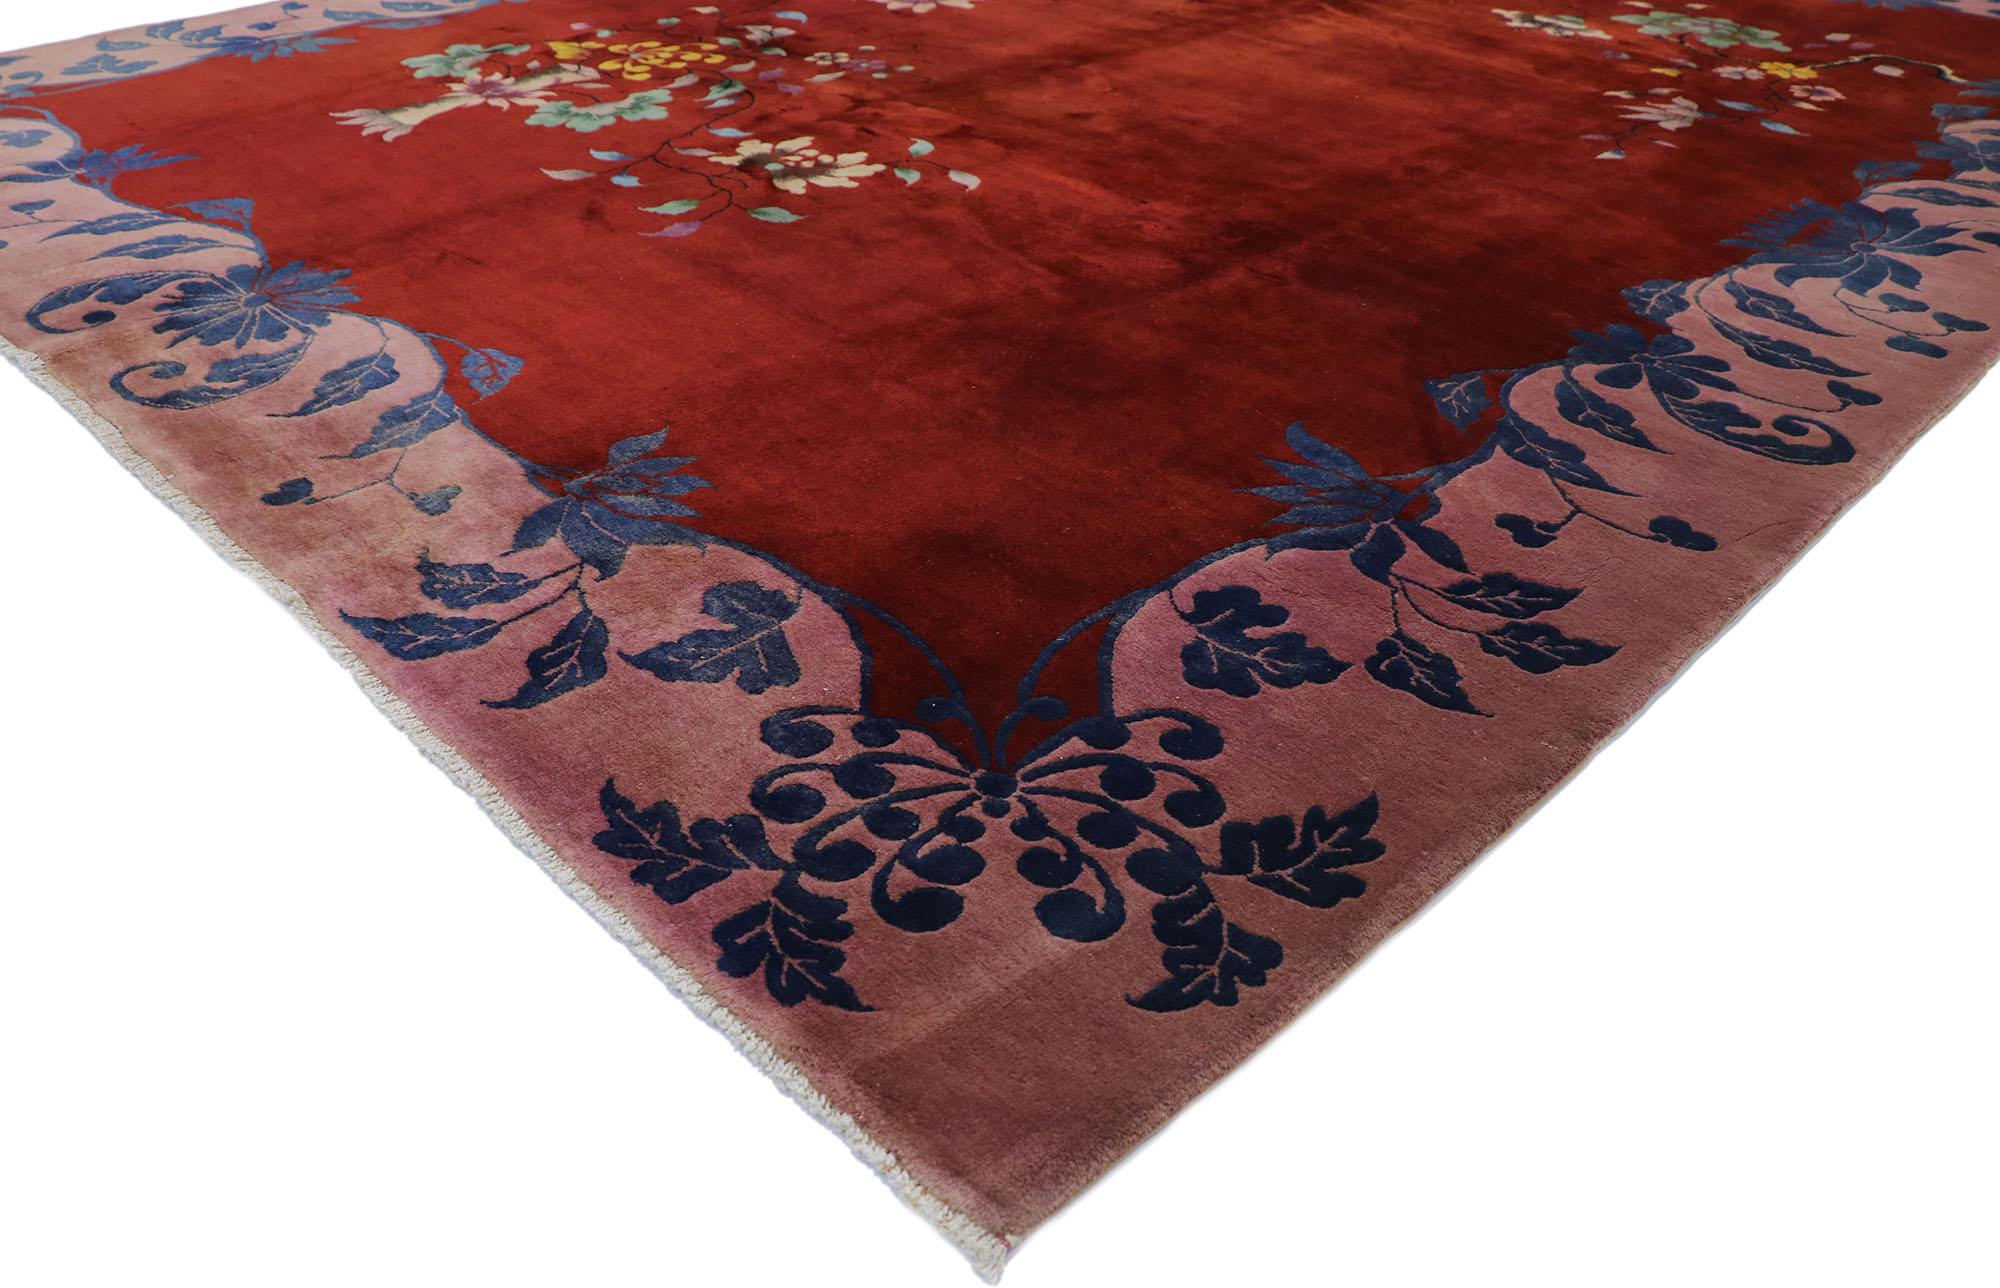 77626, tapis Art Déco chinois ancien inspiré par Walter Nichols 08'11 x 11'05. Ce tapis Art déco chinois ancien, en laine nouée à la main, présente un champ et des bordures à blocs de couleurs festonnés de frondes et de fleurs opulentes asymétriques